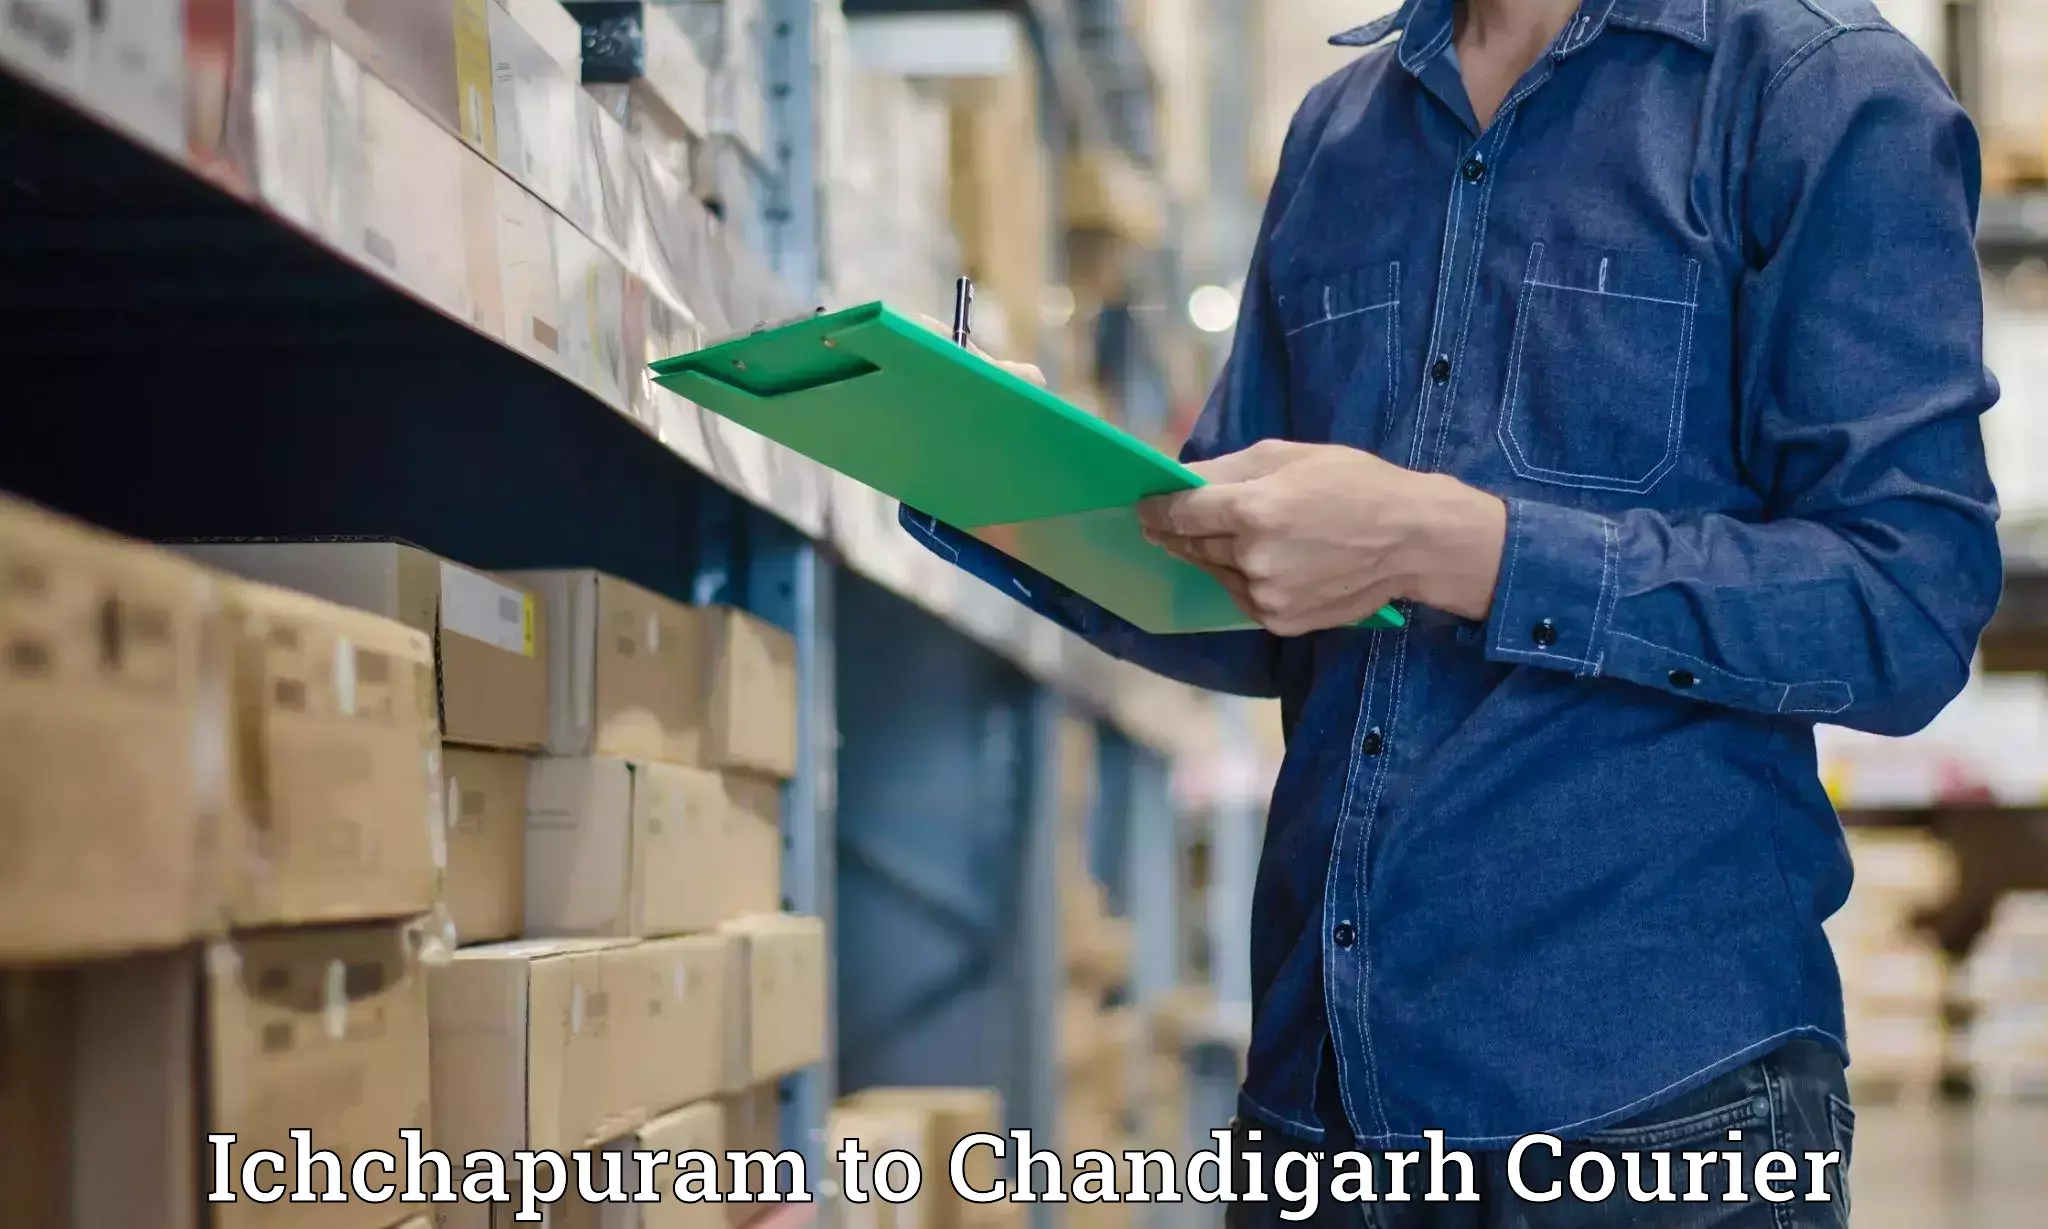 On-call courier service Ichchapuram to Chandigarh